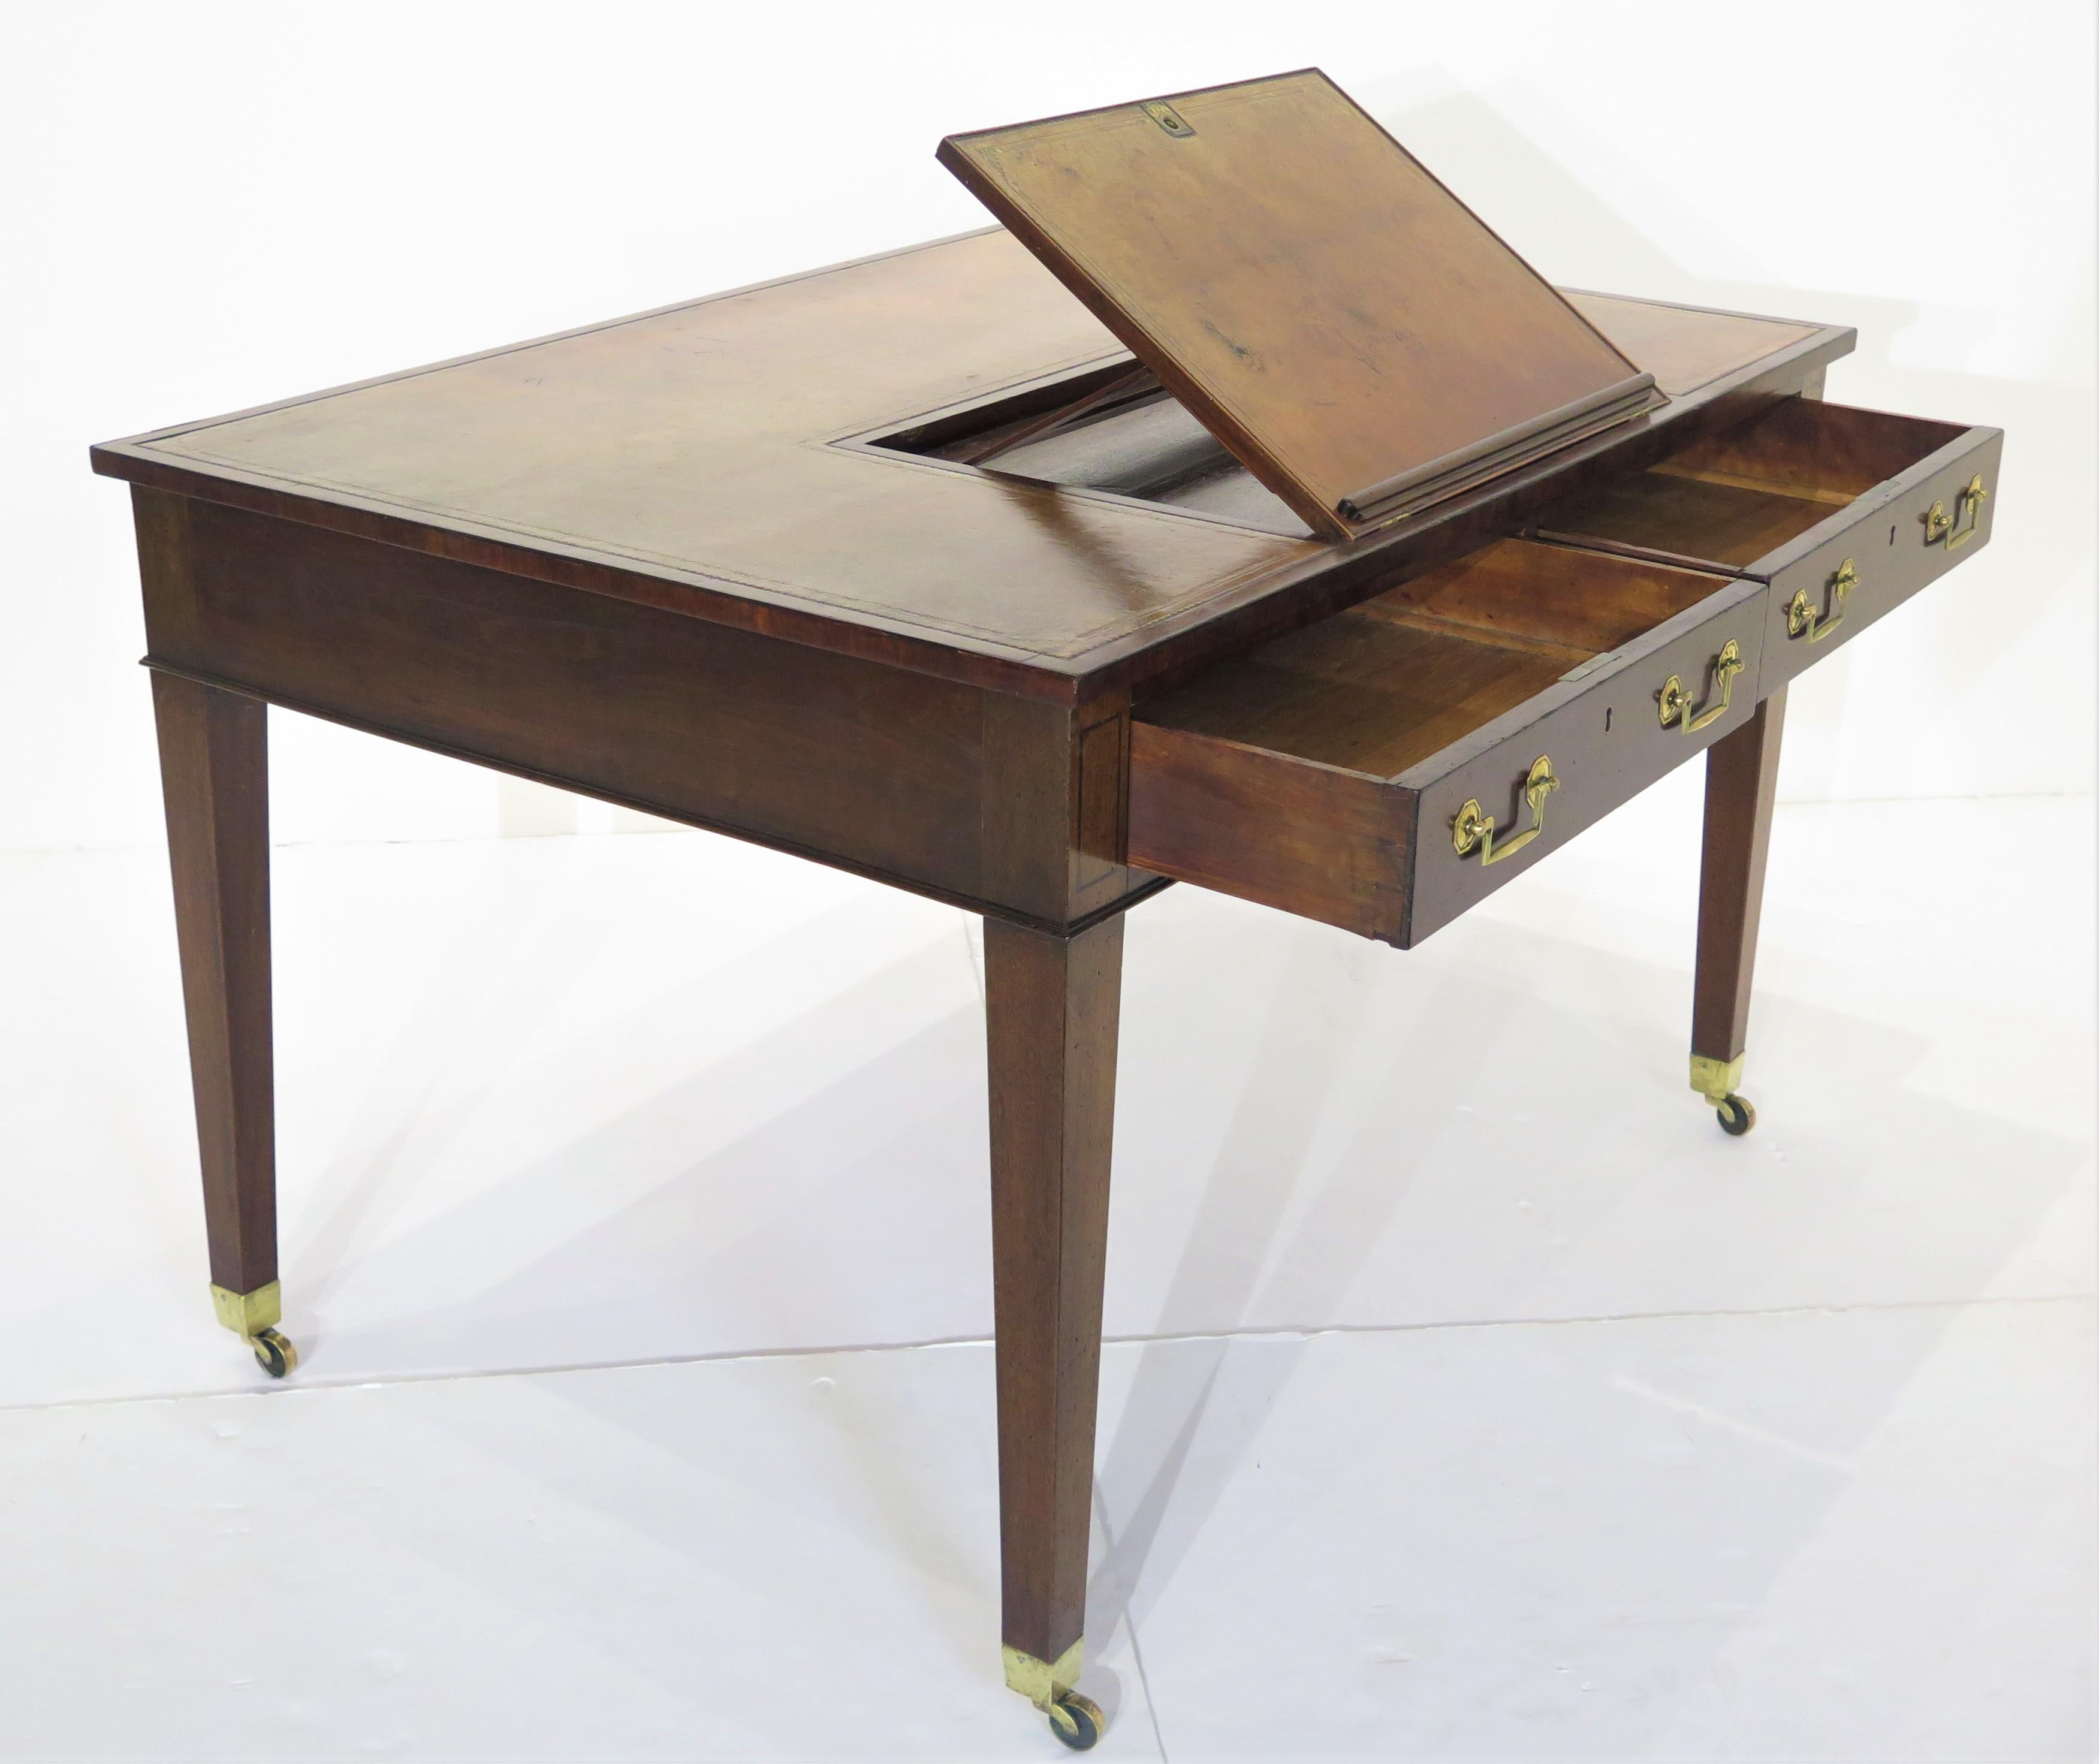 une belle table d'écriture de style Chippendale de George III pour la bibliothèque d'un gentleman avec une pente d'écriture ajustable / support de livre, acajou avec surface de travail en cuir, bordure gaufrée dorée, quelques taches et